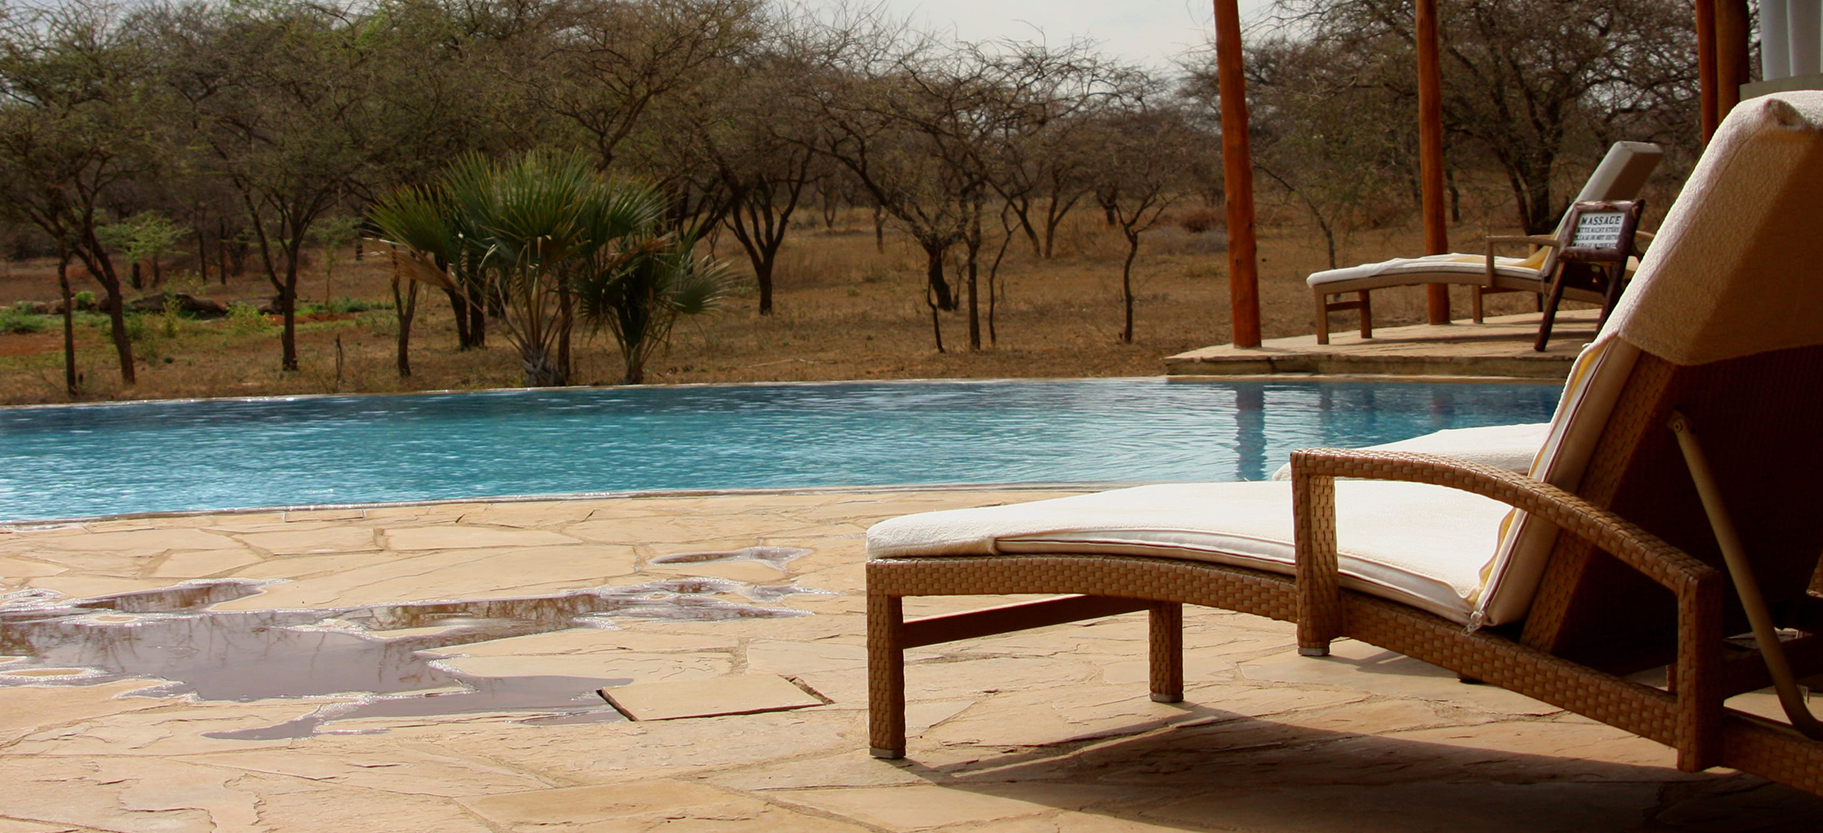 Luxury safari lodges